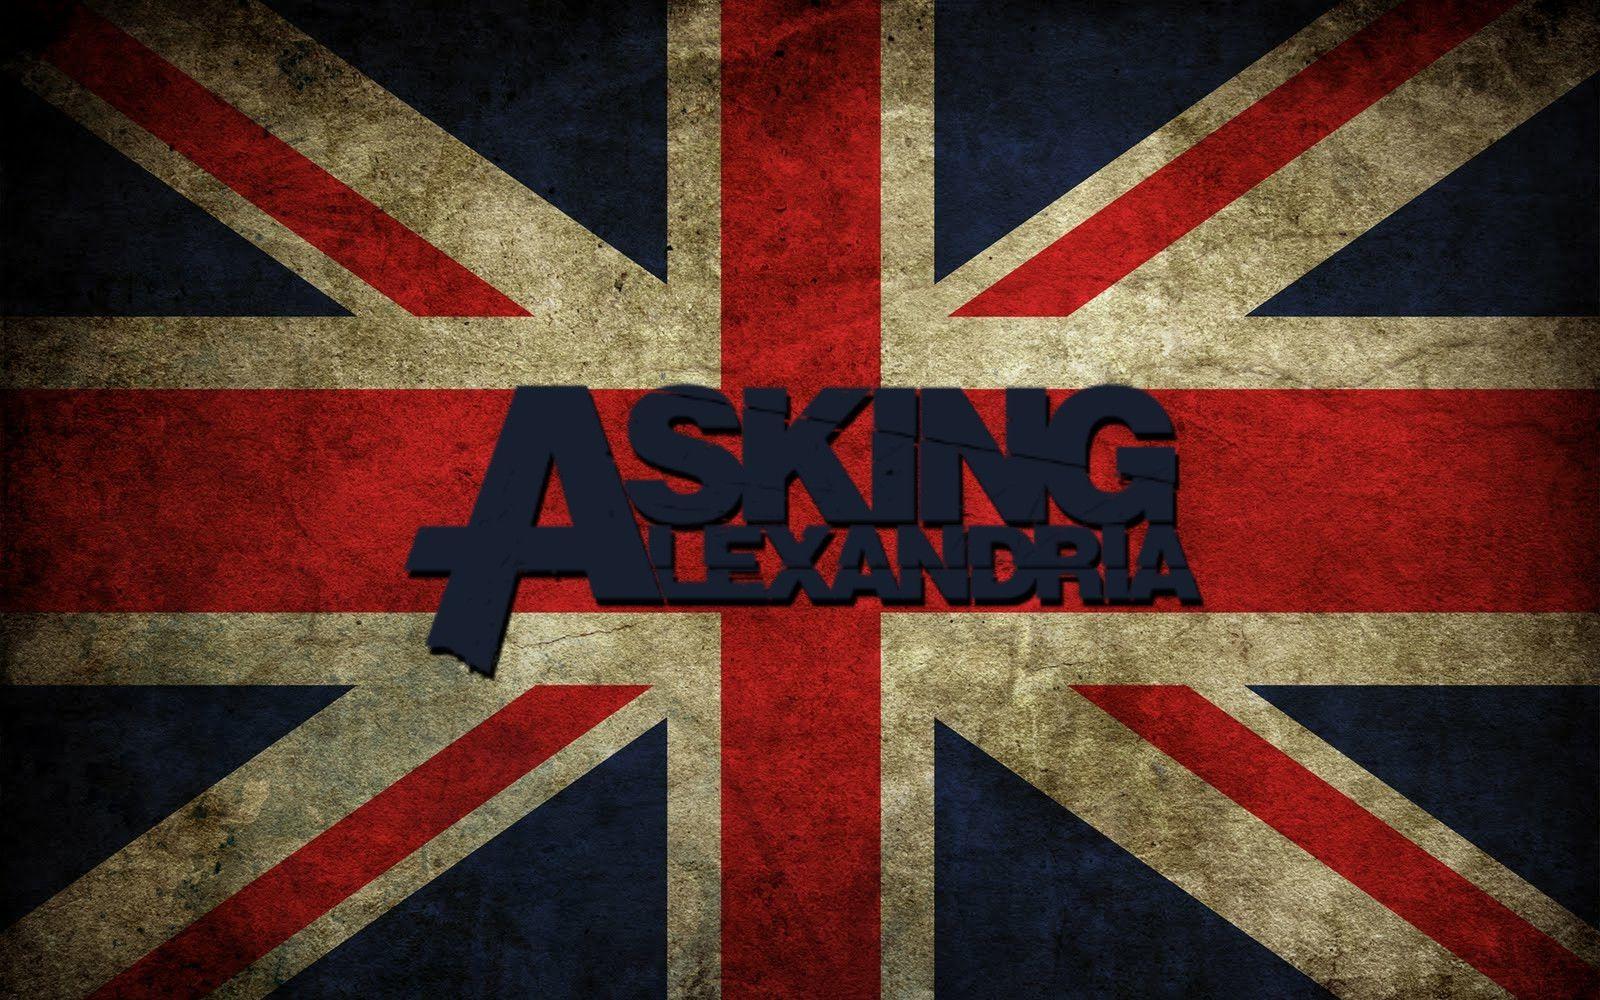 Asking Alexandria Logo - Asking Alexandria Logo Wallpapers 2016 - Wallpaper Cave